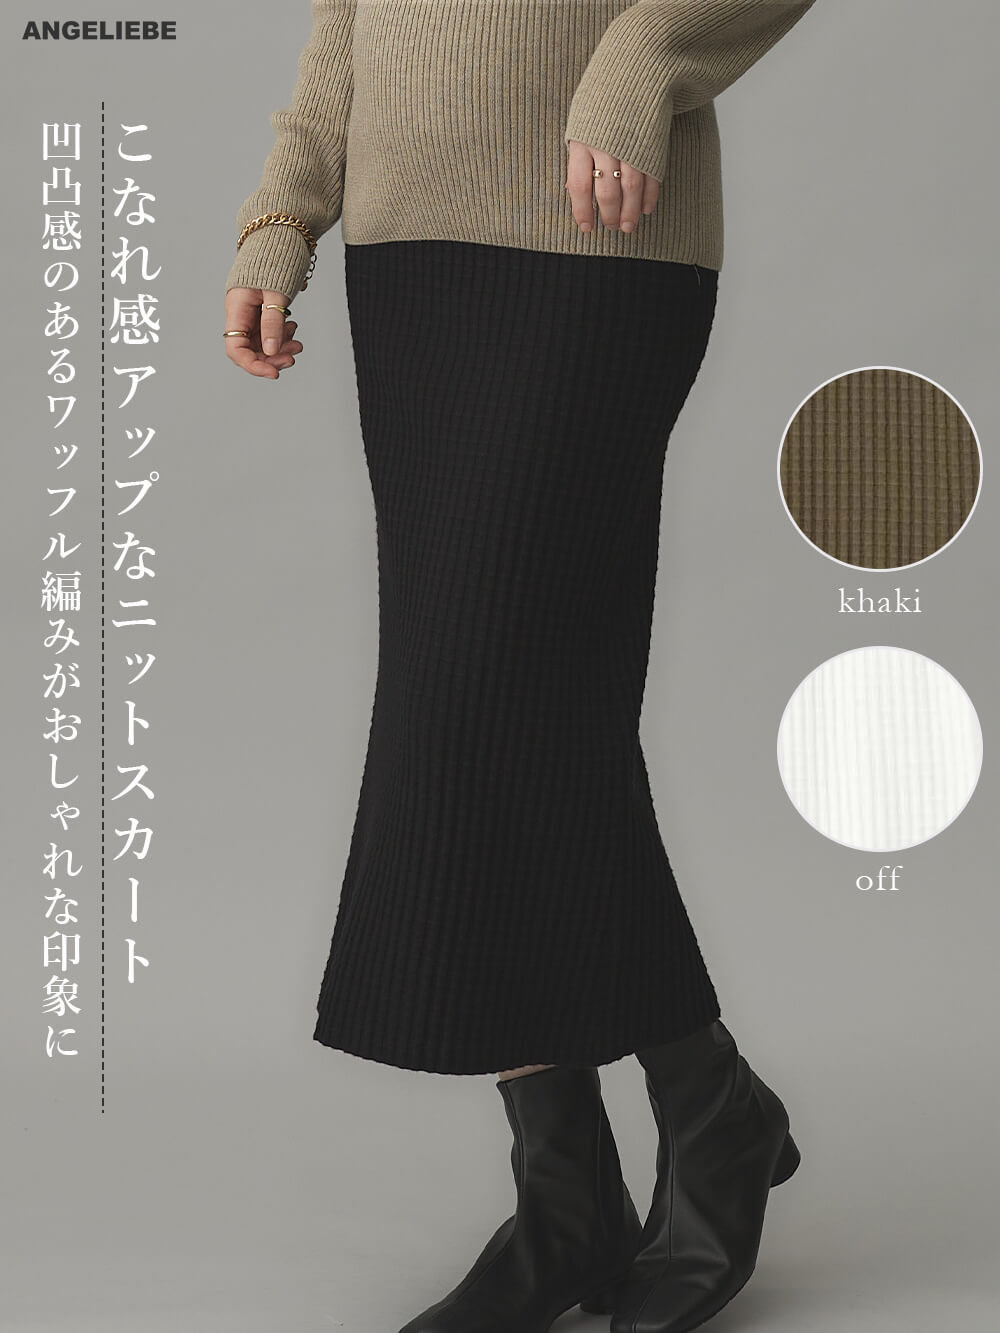  maternity skirt autumn winter narrow skirt knitted tight skirt .... knitted skirt rose ma dam strut slit stretch 